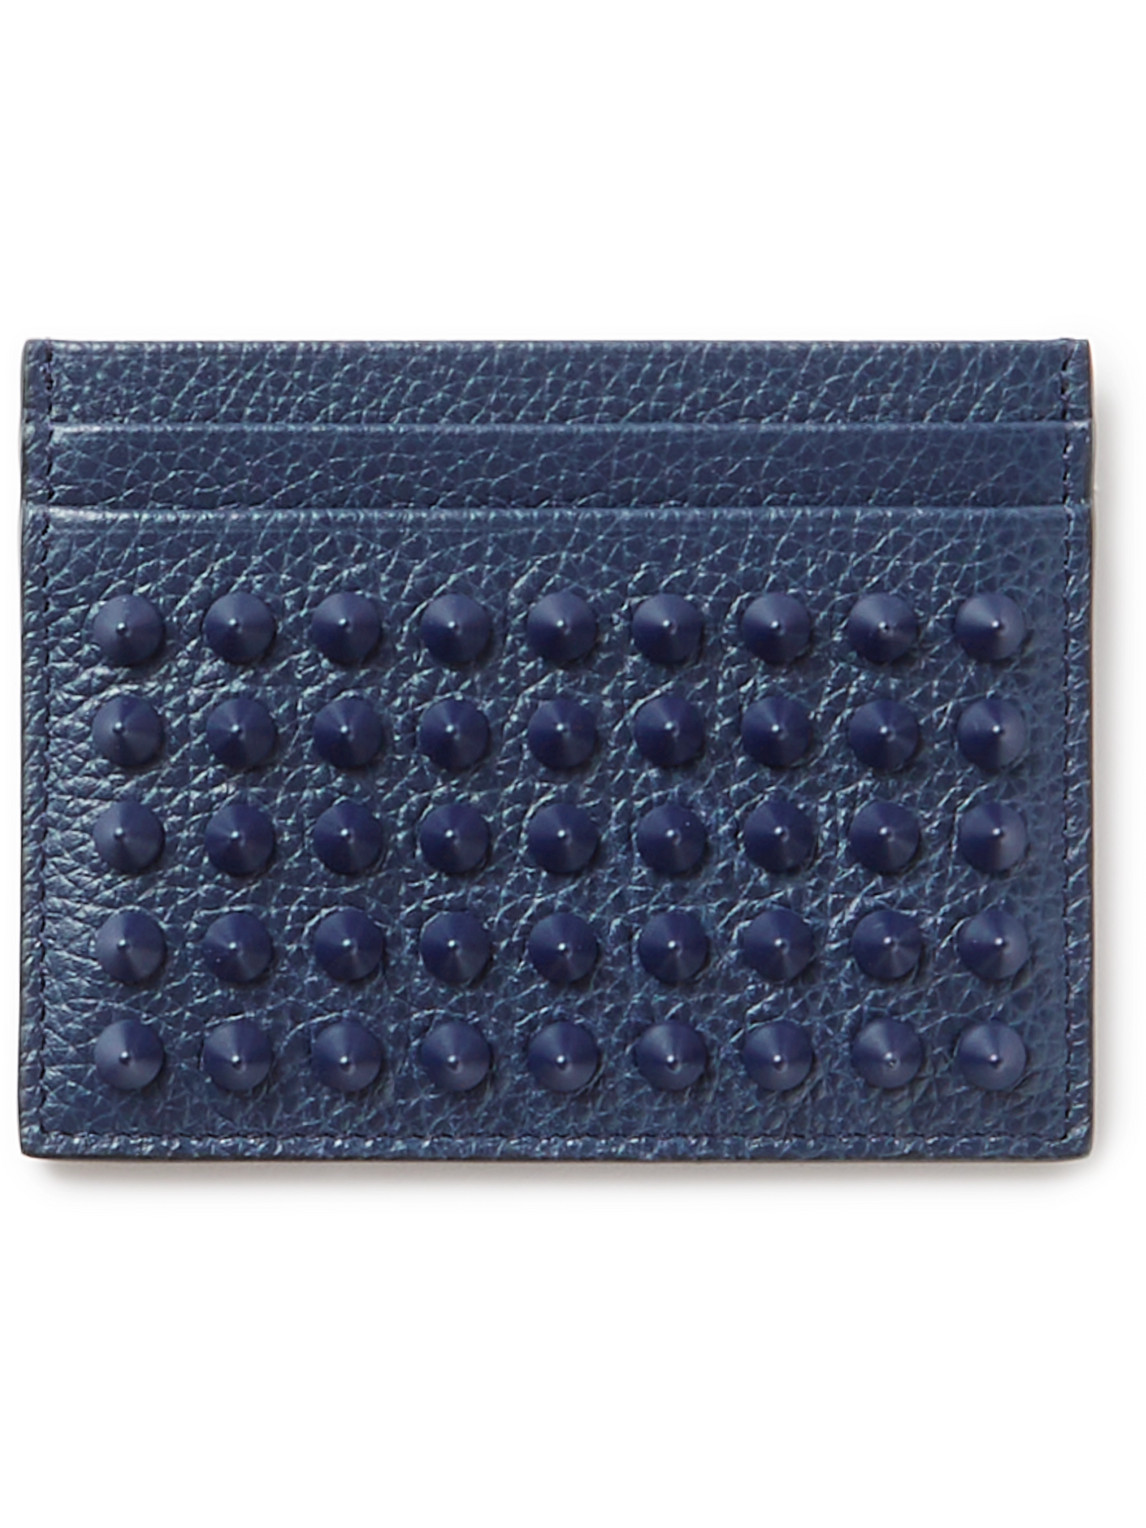 Christian Louboutin Studded Full-grain Leather Cardholder In Blue